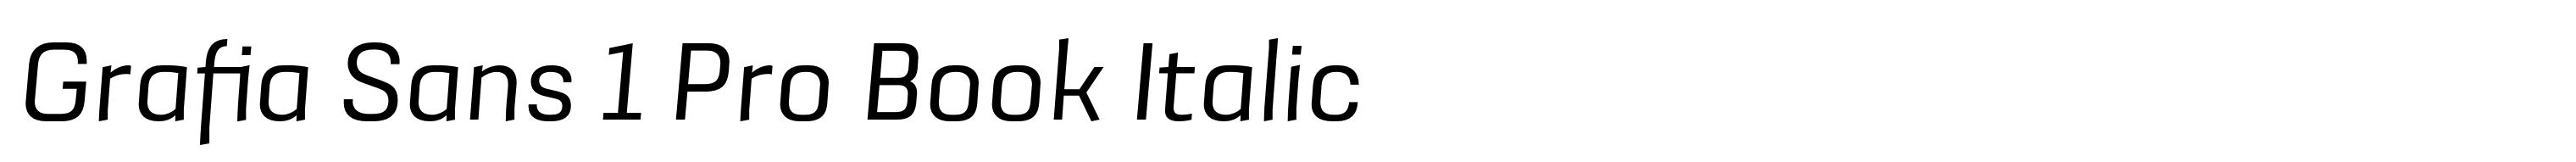 Grafia Sans 1 Pro Book Italic